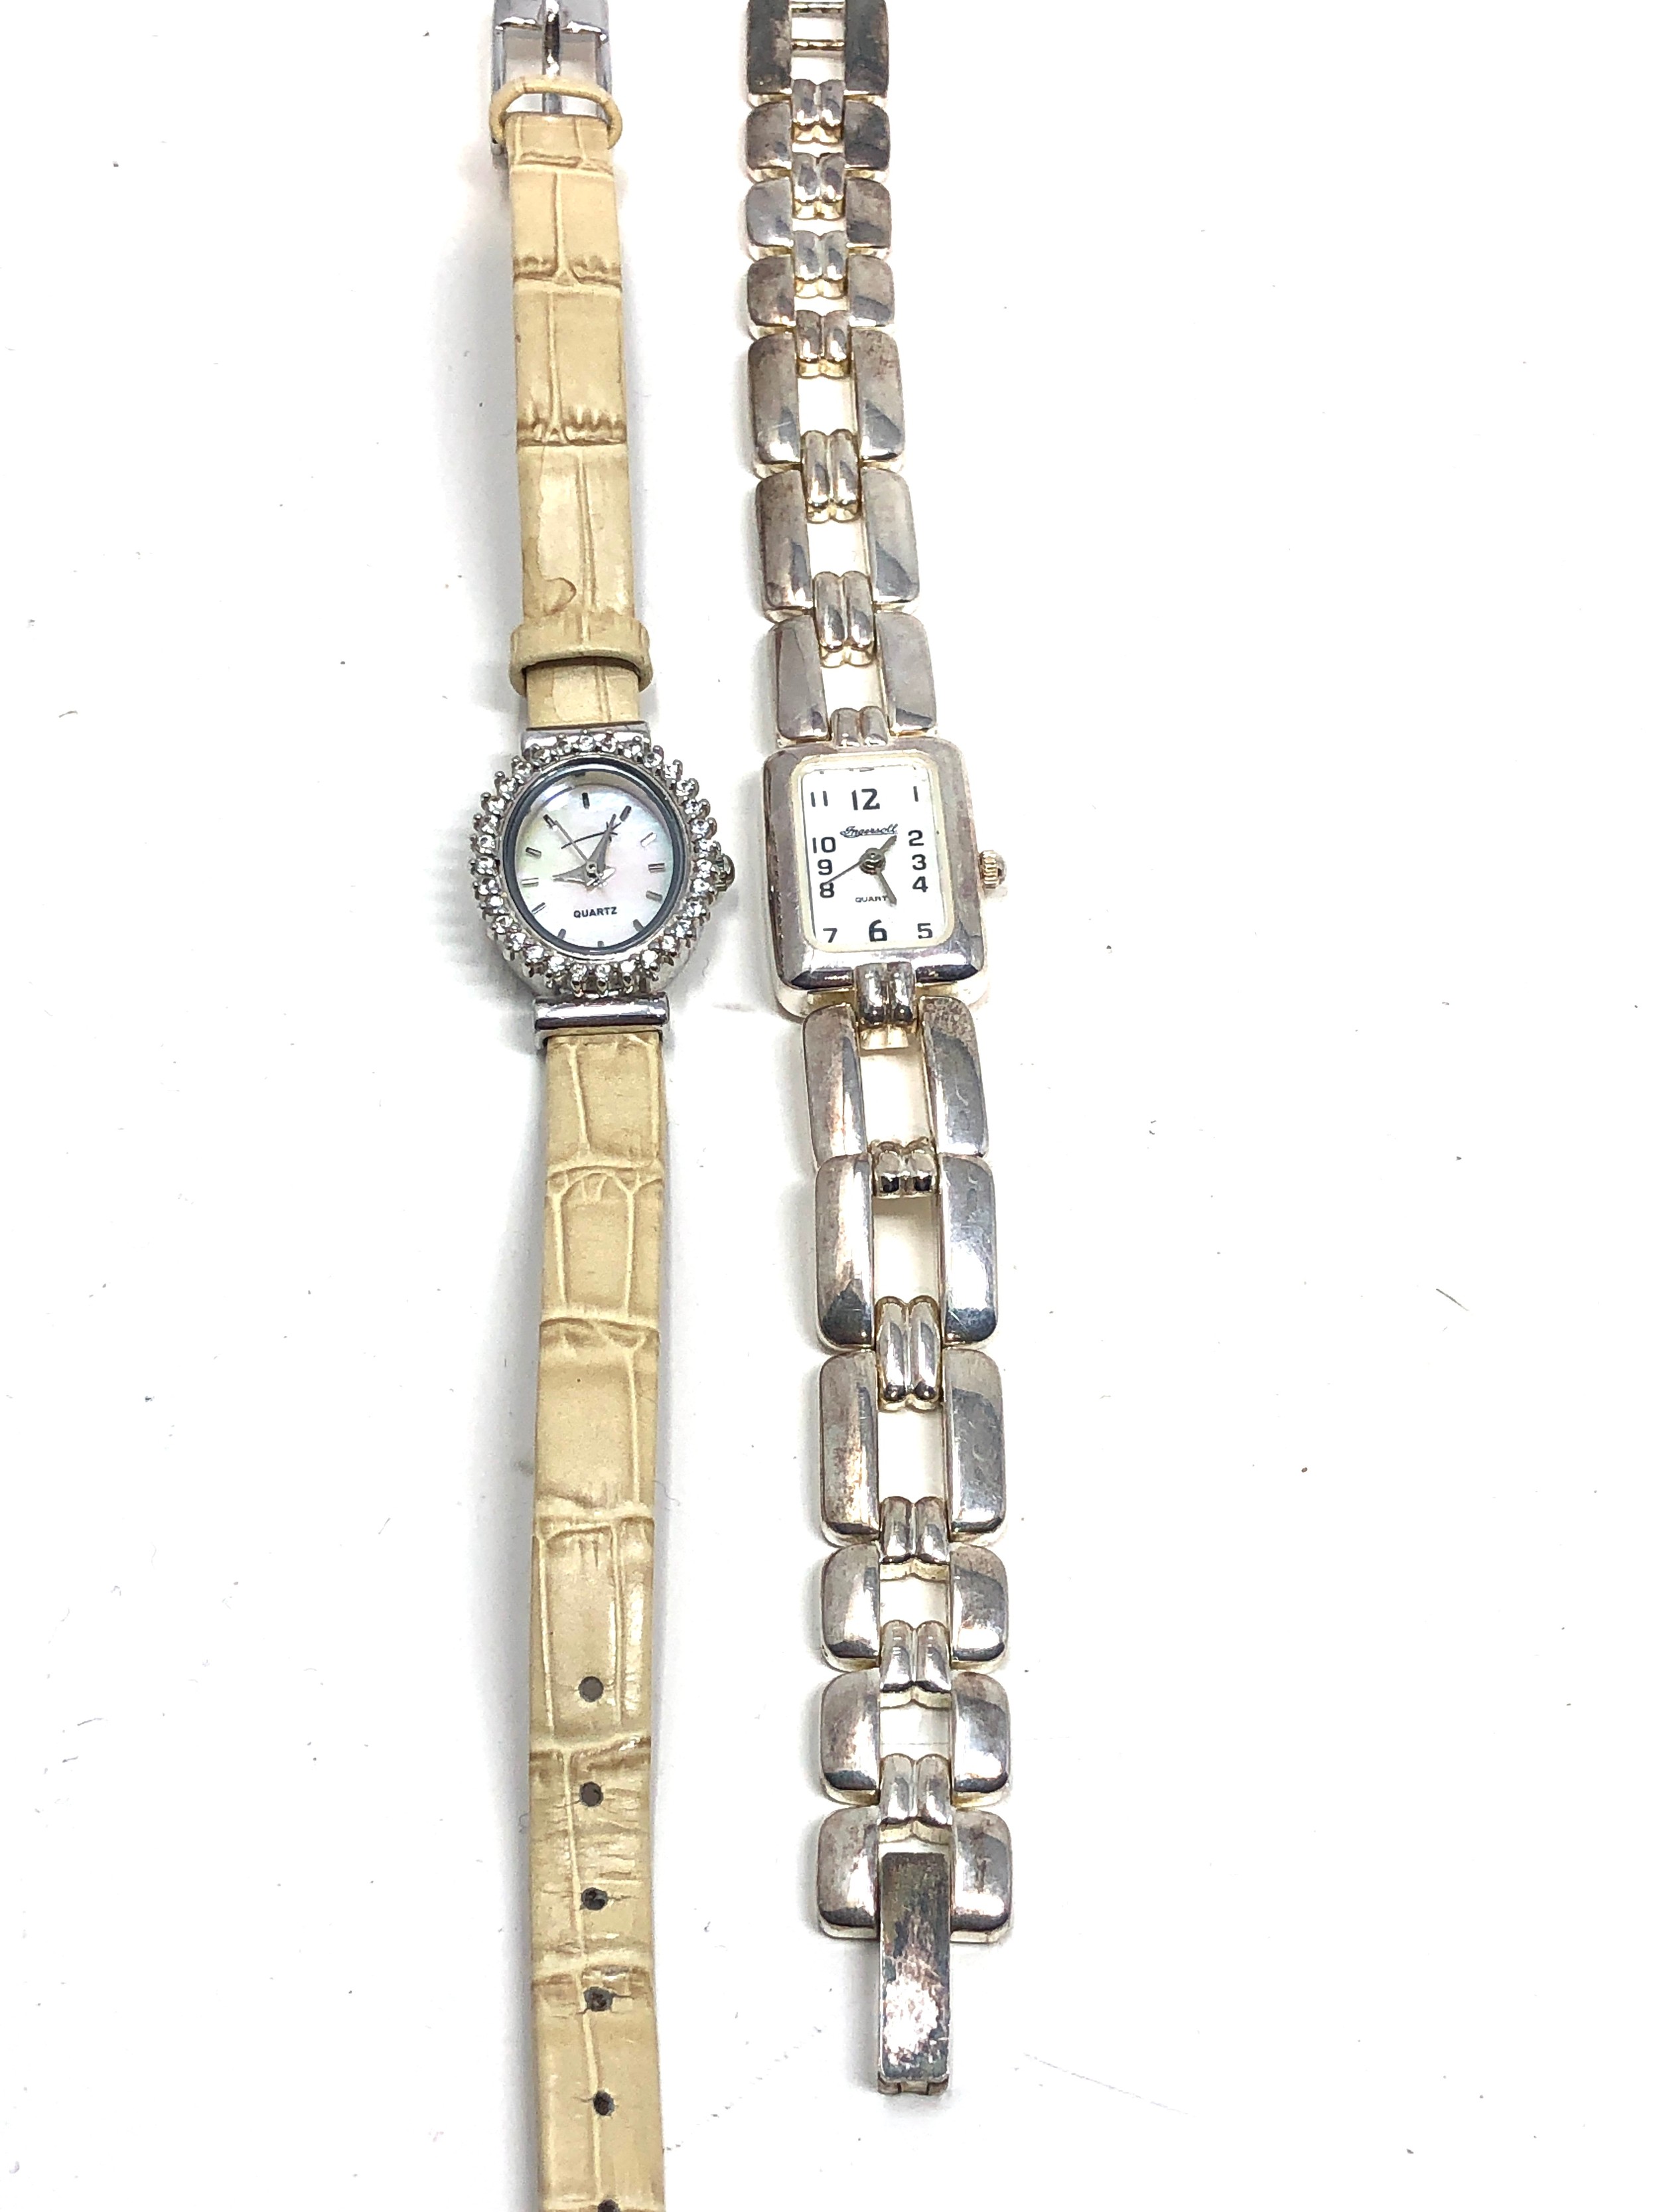 2 ladies 925 silver quartz wristwatches working order